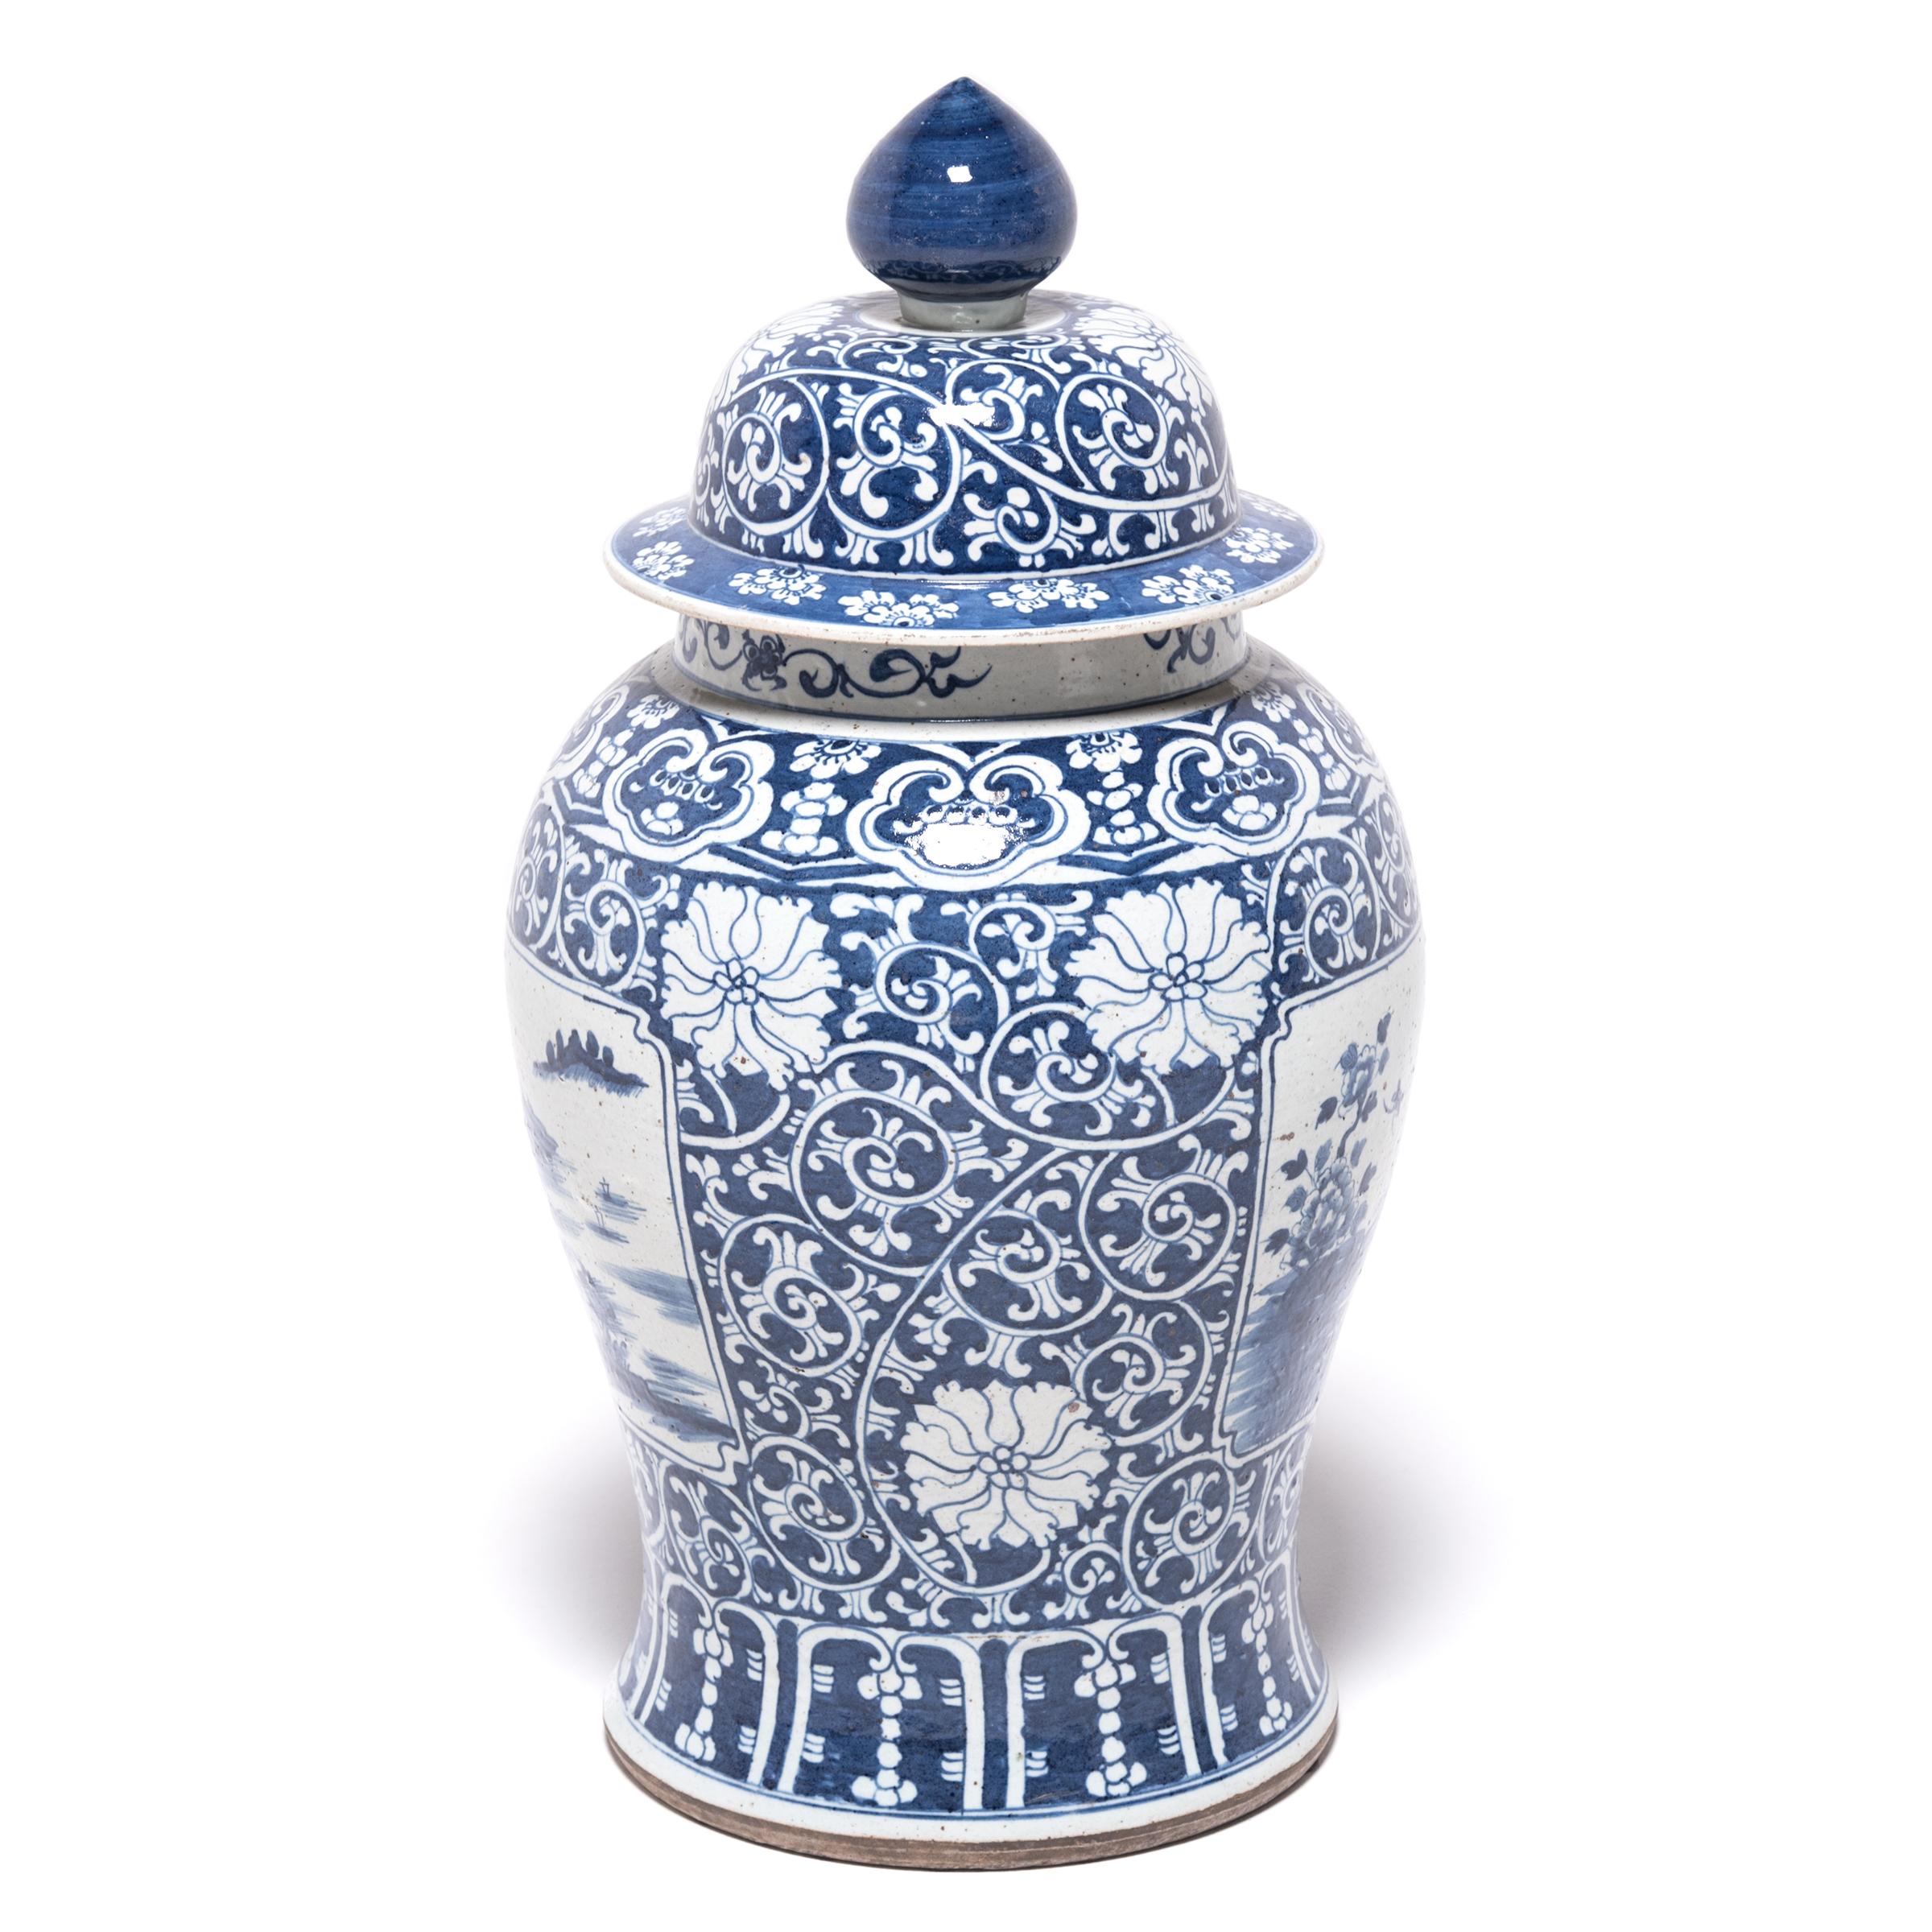 Cette jarre balustre bleue et blanche a été fabriquée dans la région de Jiangxi en Chine. Les scènes de paysage peintes à la main par des coups de pinceau légers sont richement évocatrices et rappellent la Chine ancienne. Les jarres de cette forme